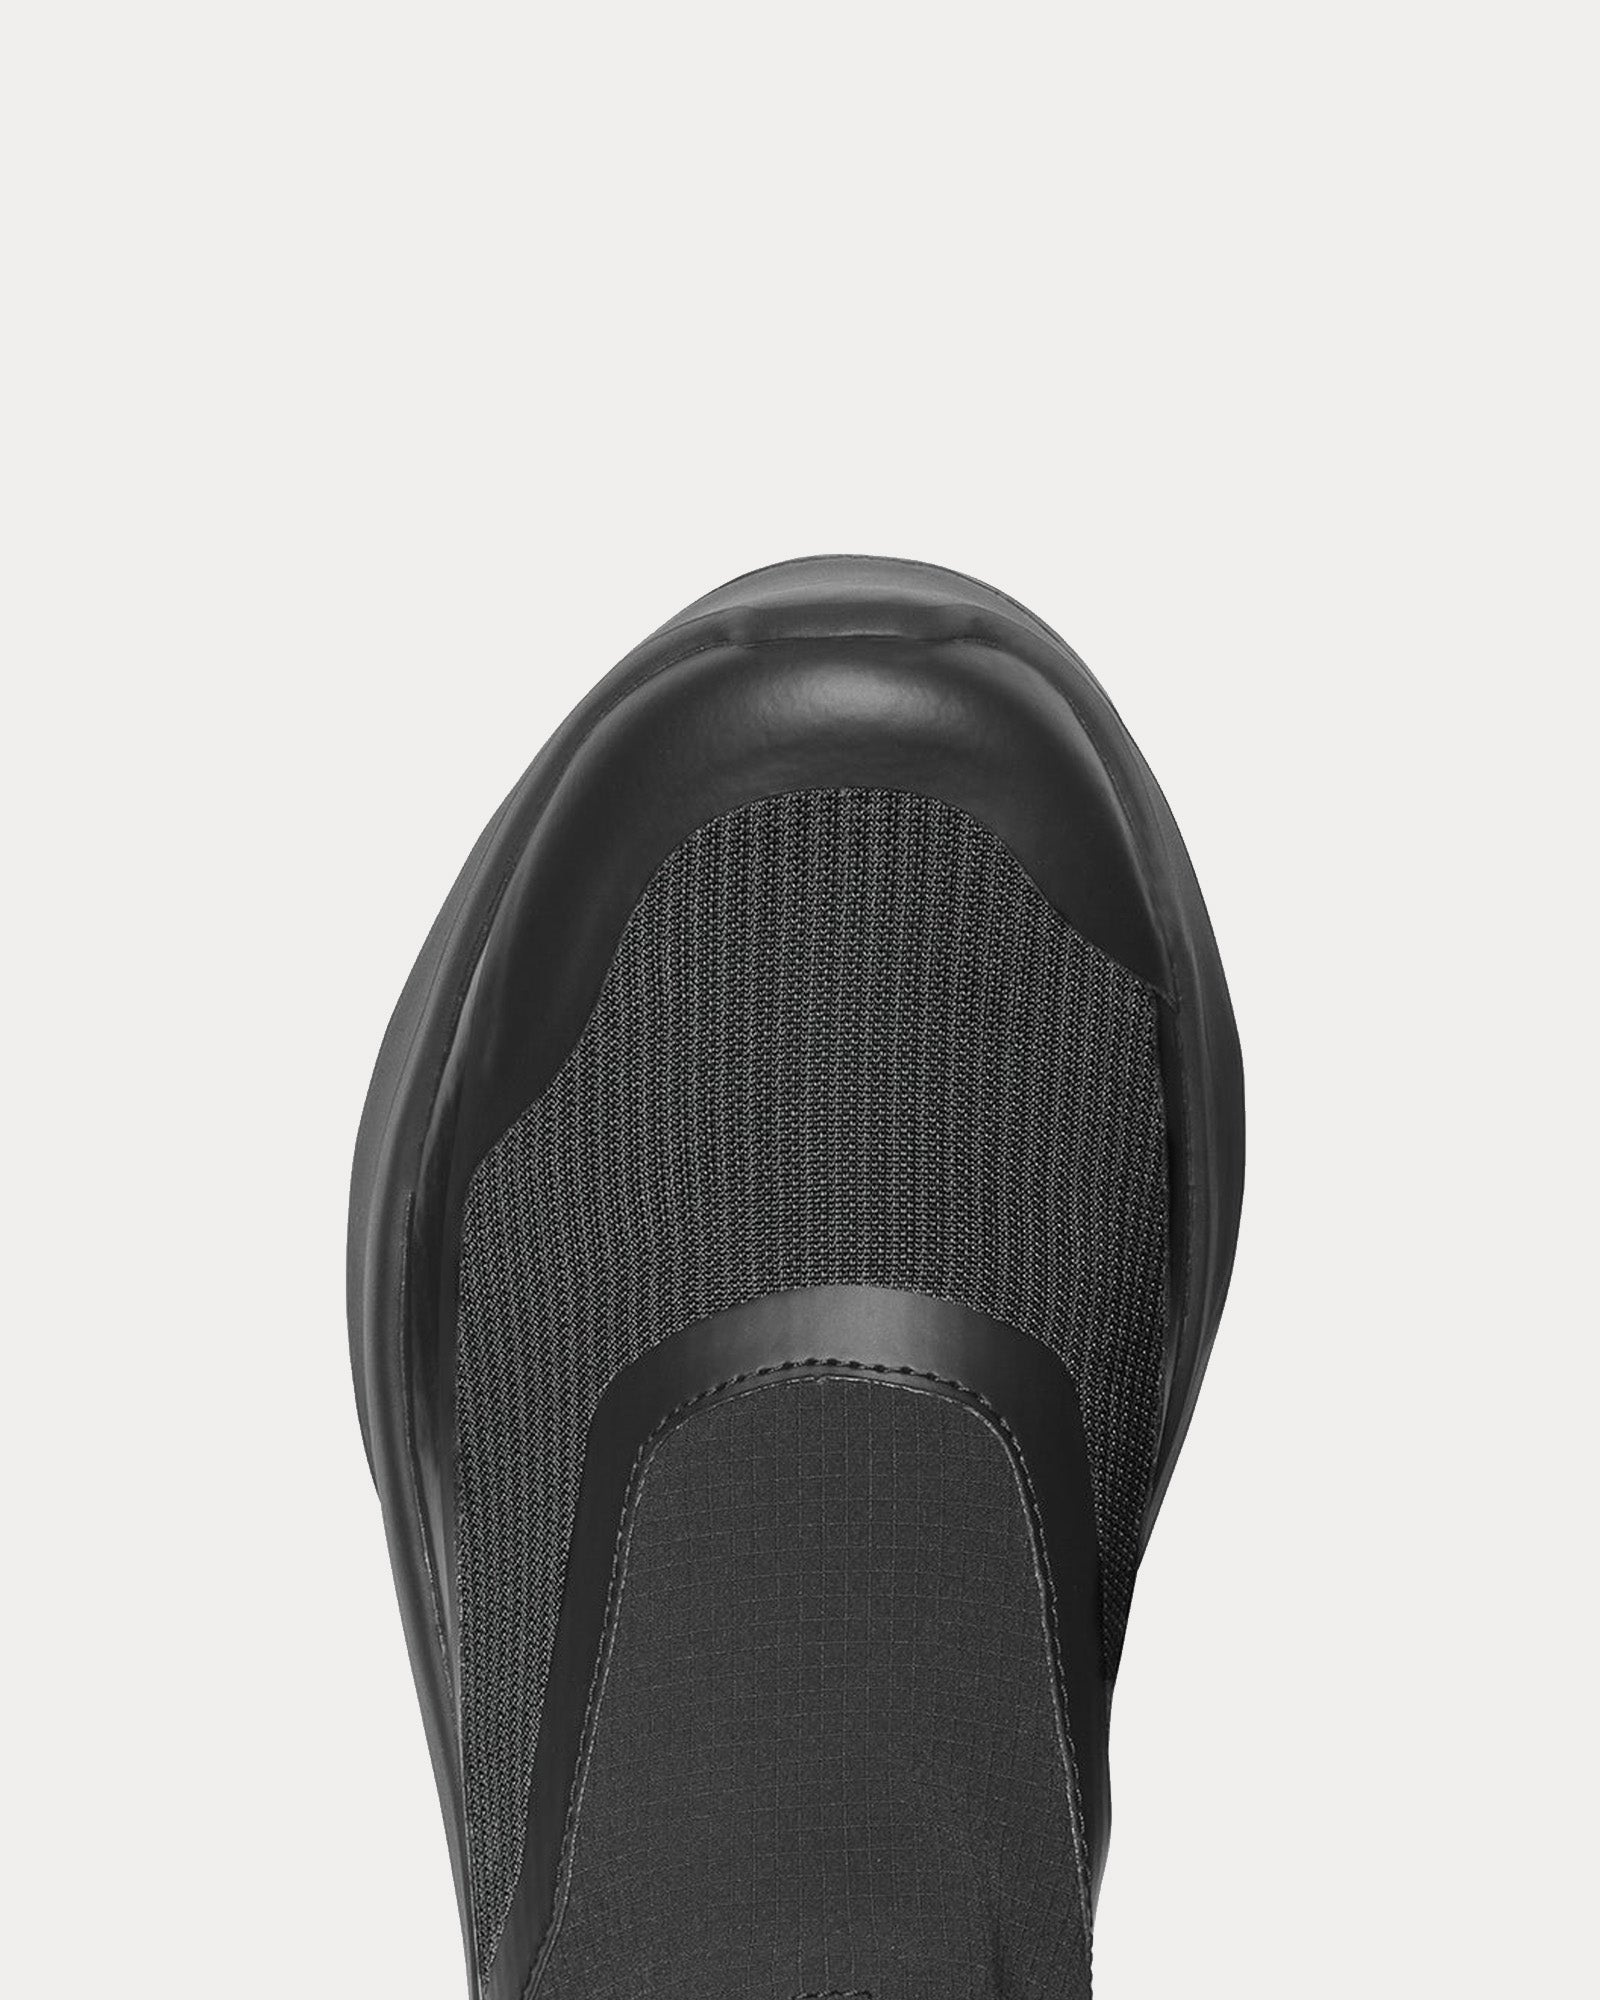 Salomon x Comme des Garçons - Platform Black Slip On Sneakers